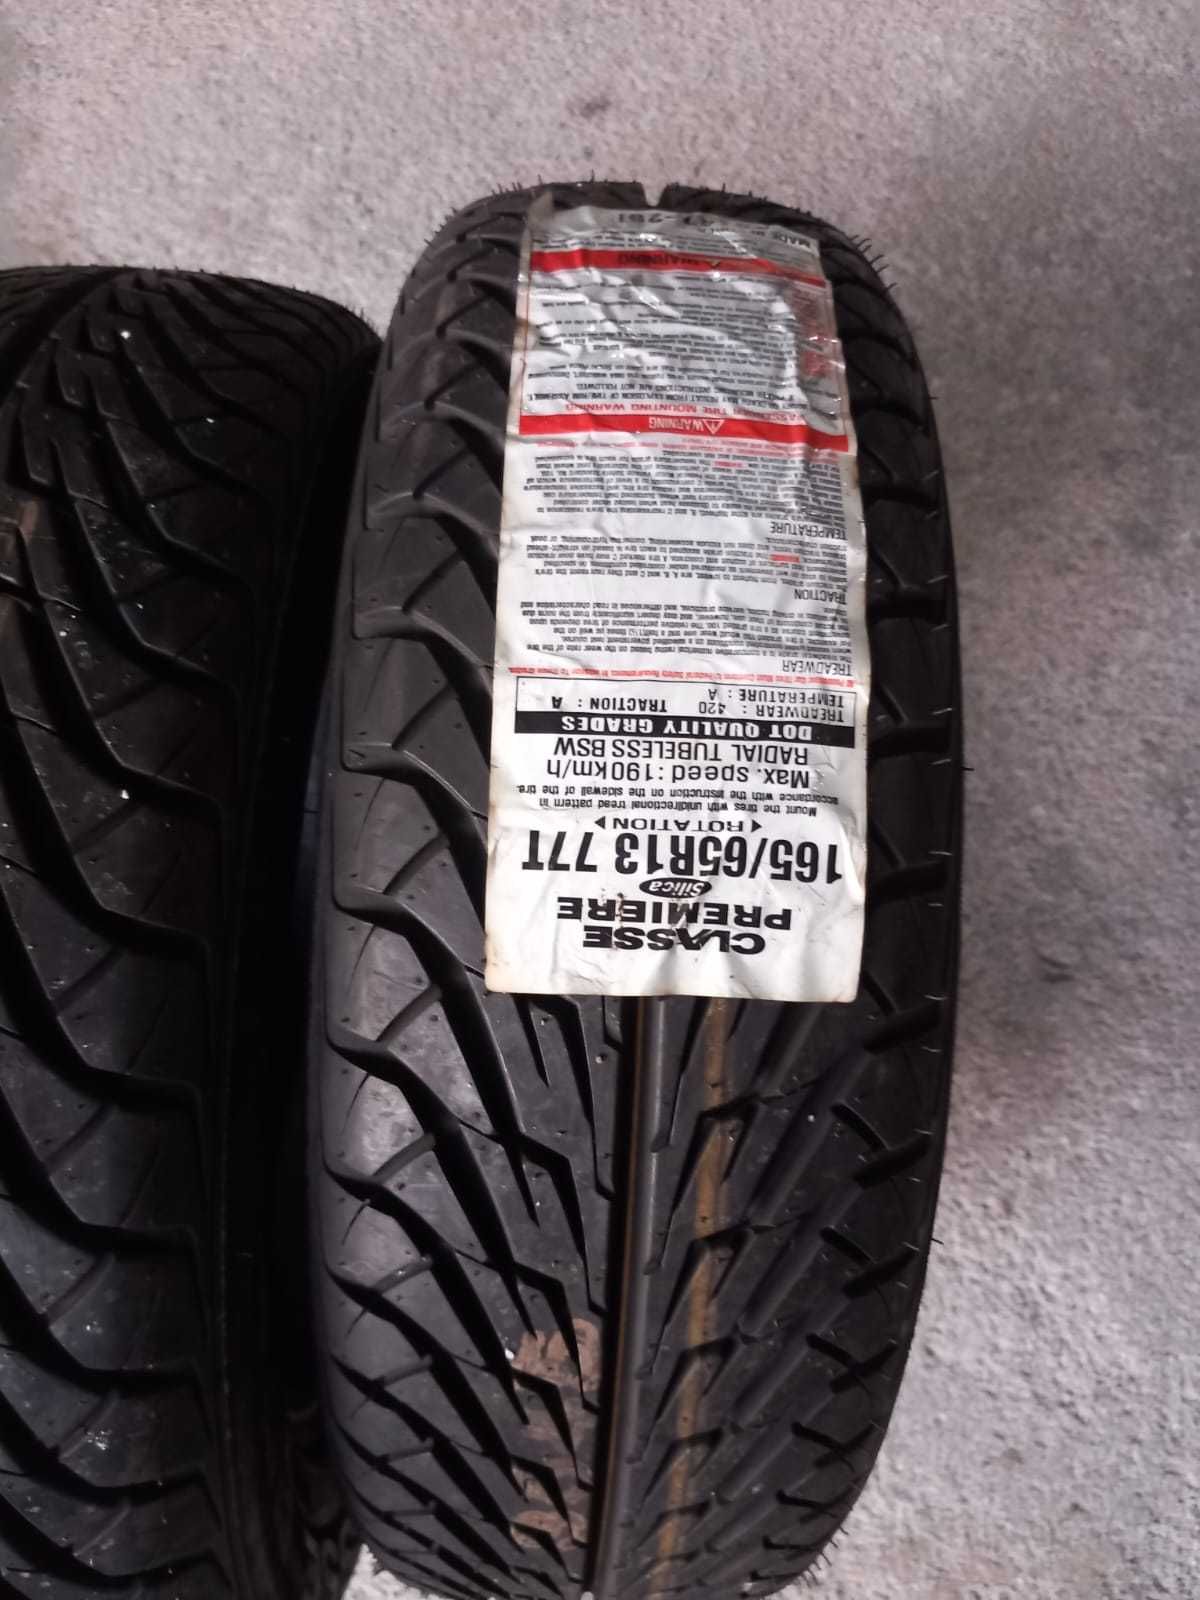 2 pneus Novos 165/65R13